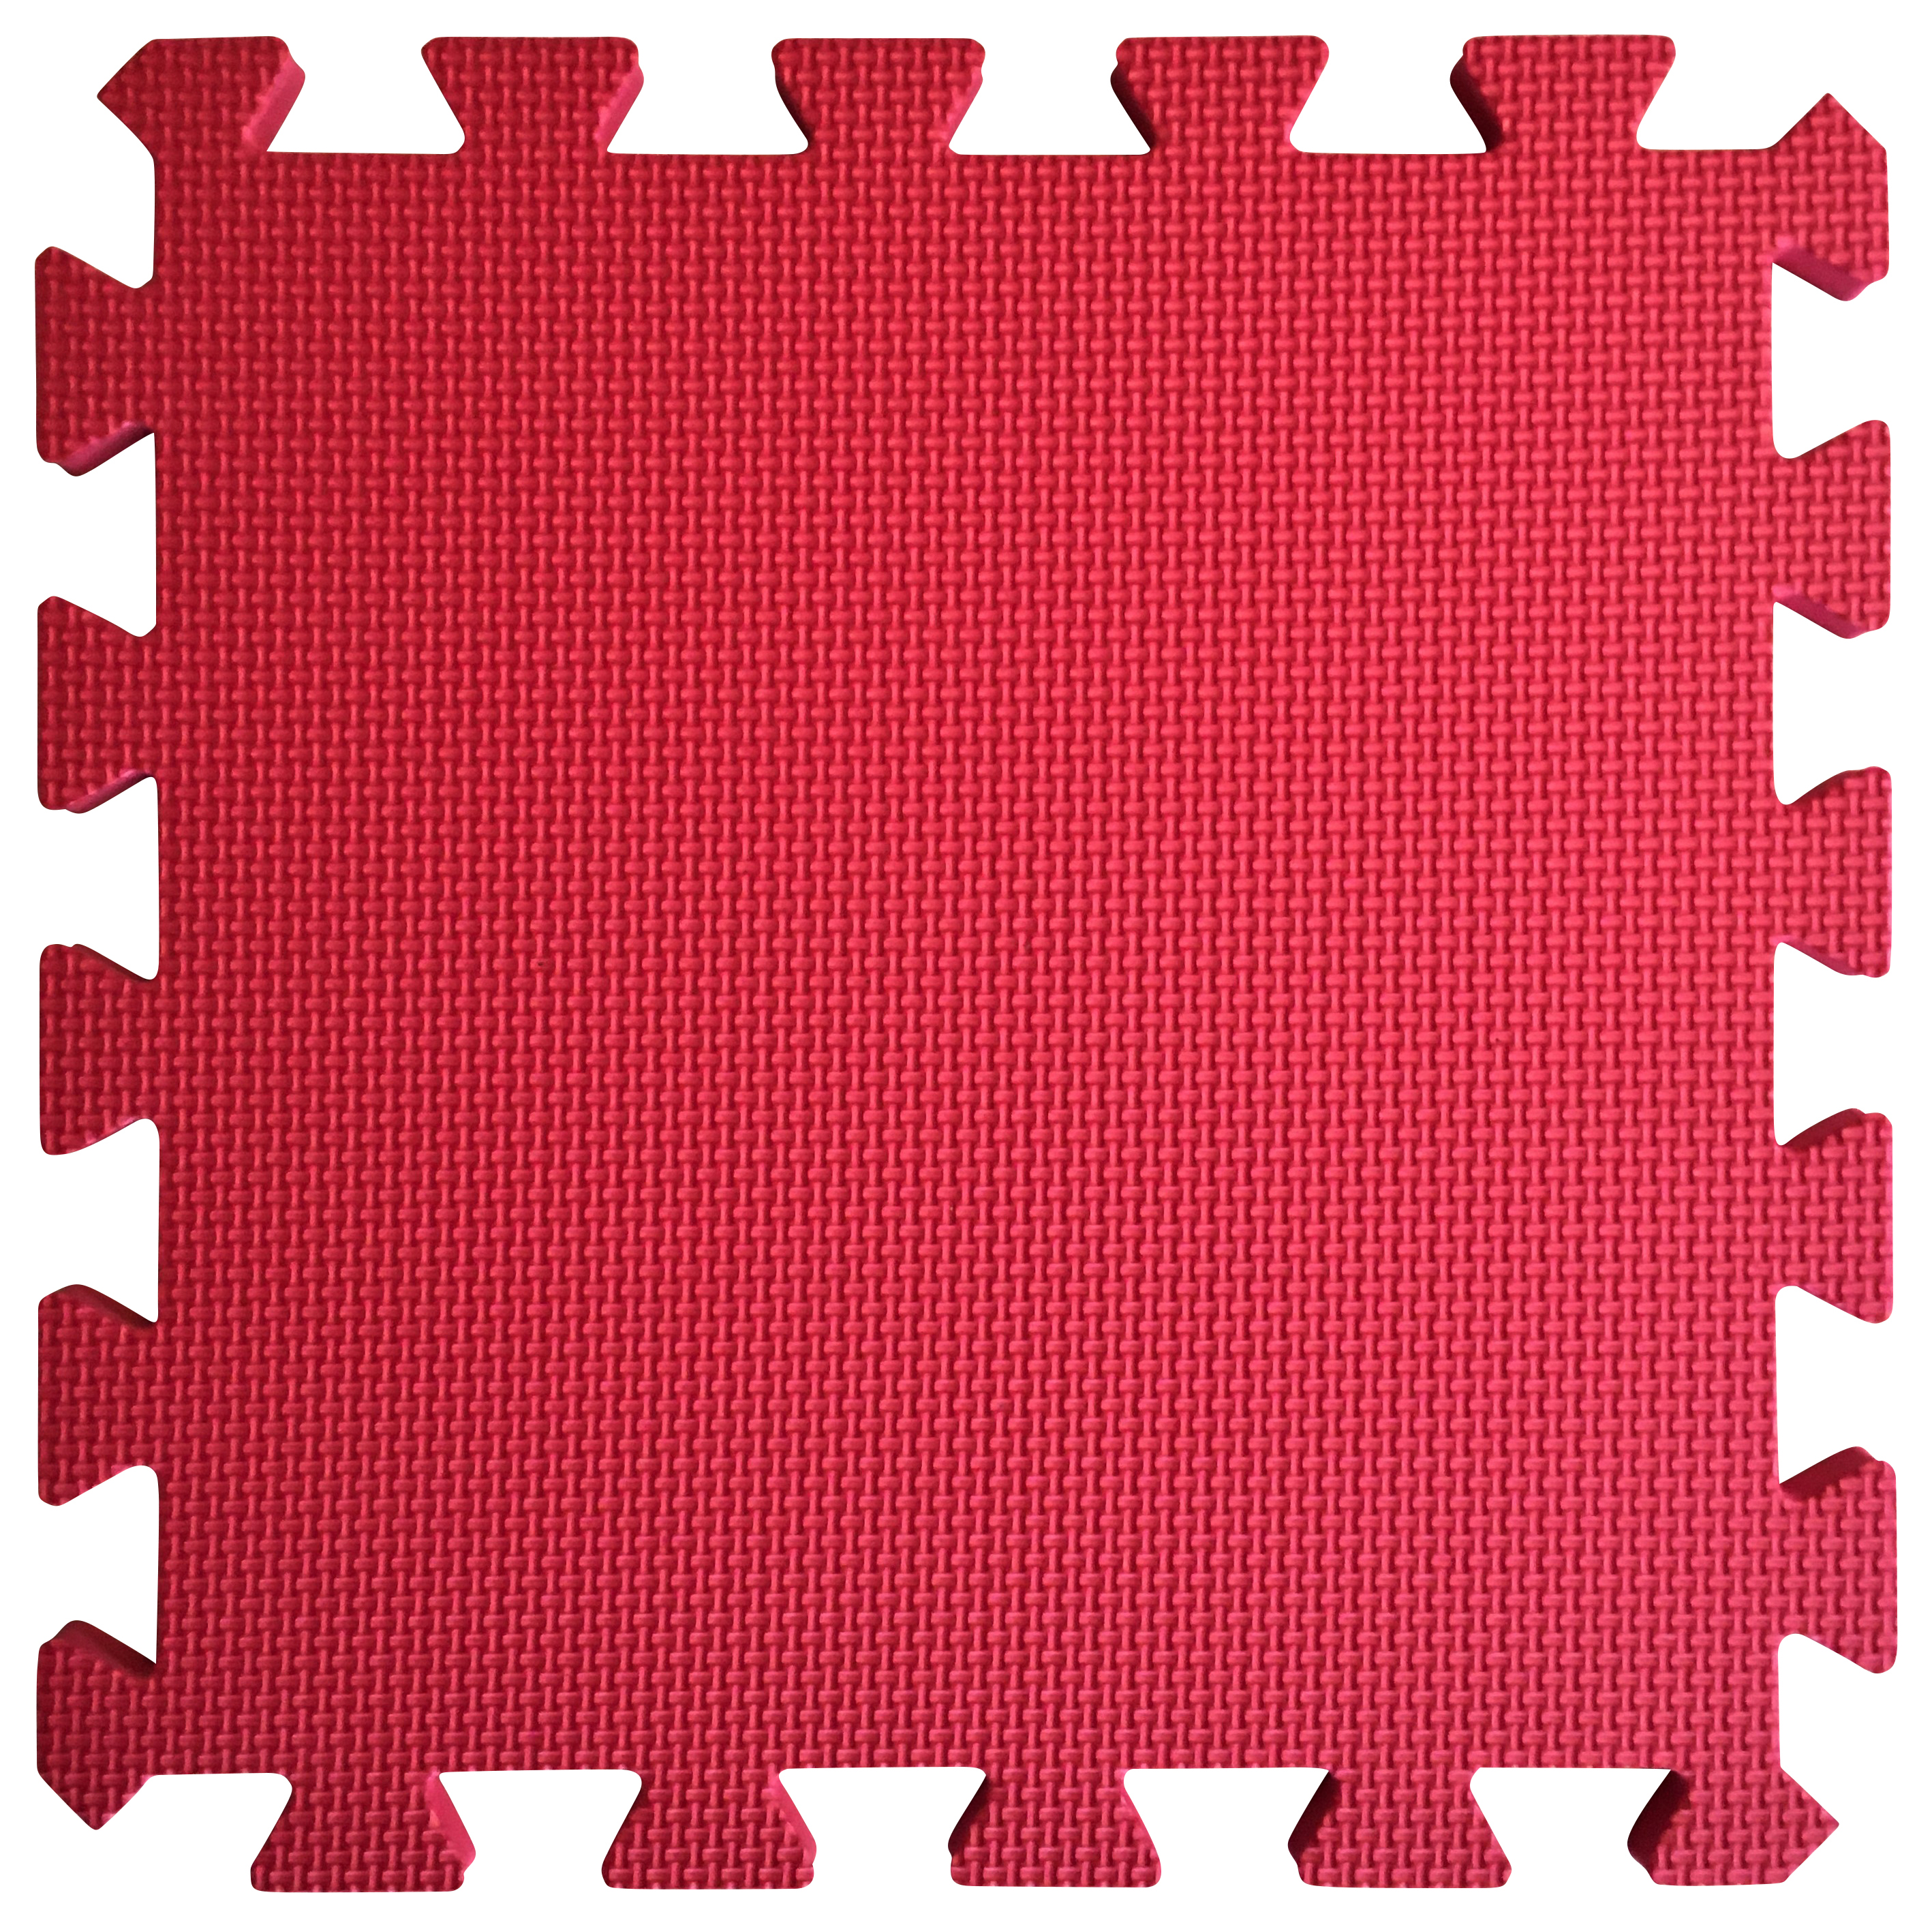 Image of Warm Floor Red Interlocking Floor Tiles for Garden Buildings - 4 x 4ft